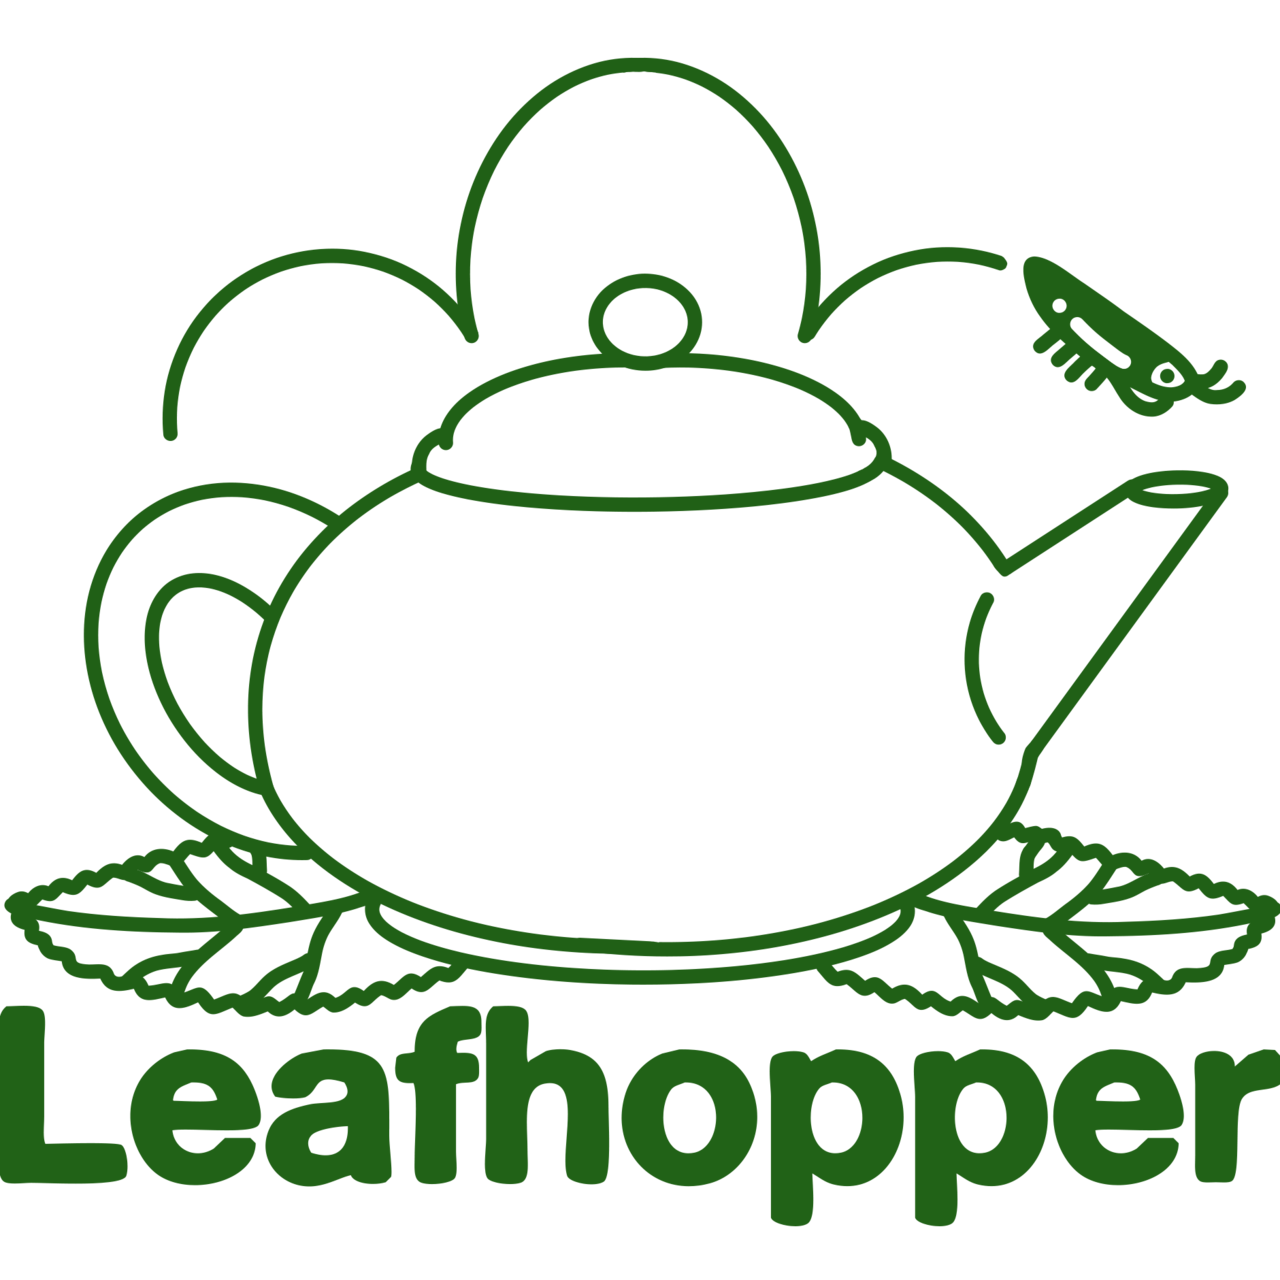 Artwork for Leafhopper